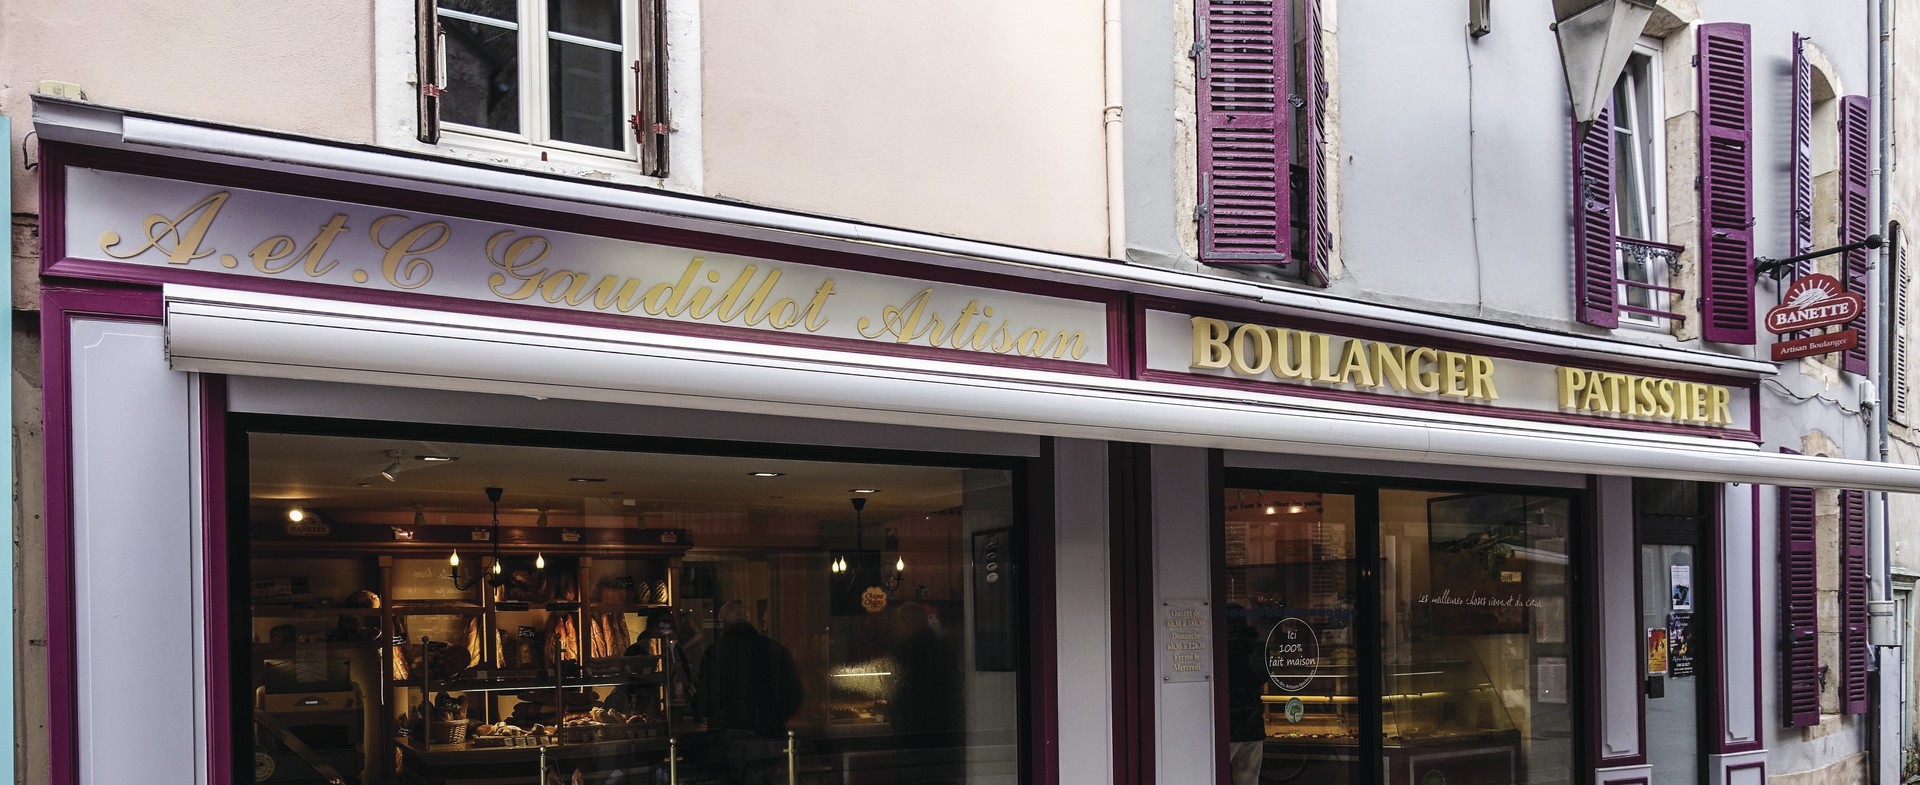 Boutique Boulangerie GAUDILLOT CEDRIC - Côte-d'Or